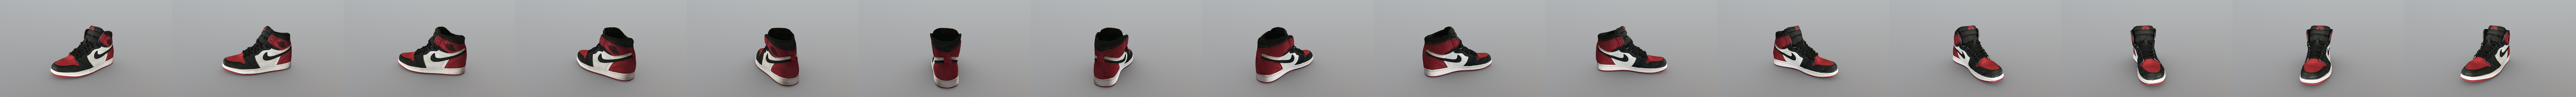 Nike Air Jordan 1 Sneaker Bred Buy Royalty Free 3d Model By Rtql8d Rtql8d A8b7507